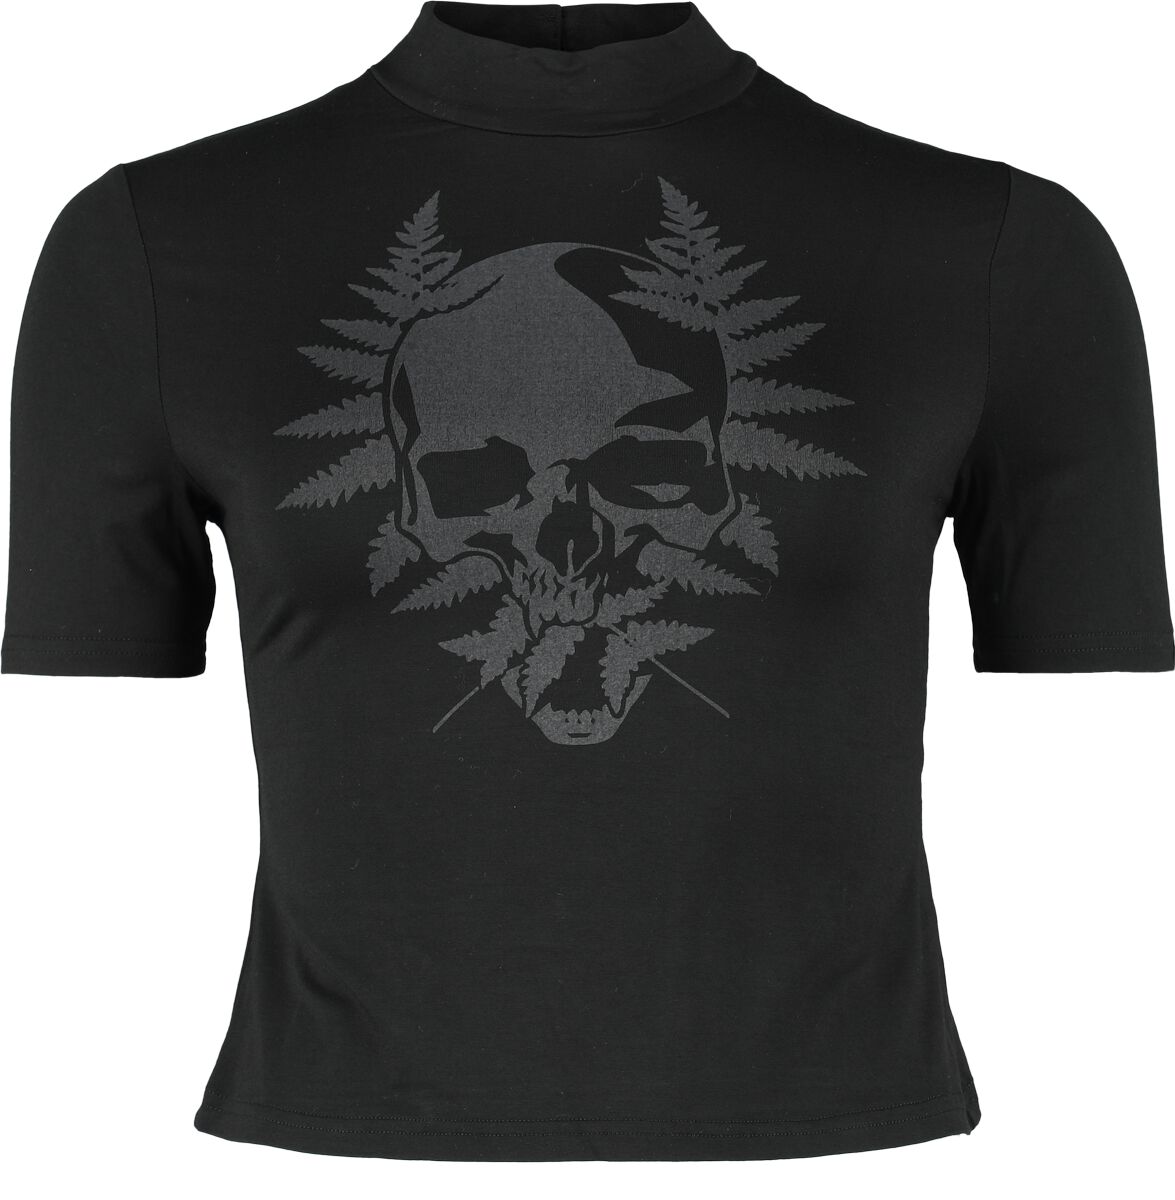 KIHILIST by KILLSTAR - Gothic T-Shirt - Live Twice Short Sleeve Top - XS bis XXL - für Damen - Größe S - schwarz von KIHILIST by KILLSTAR